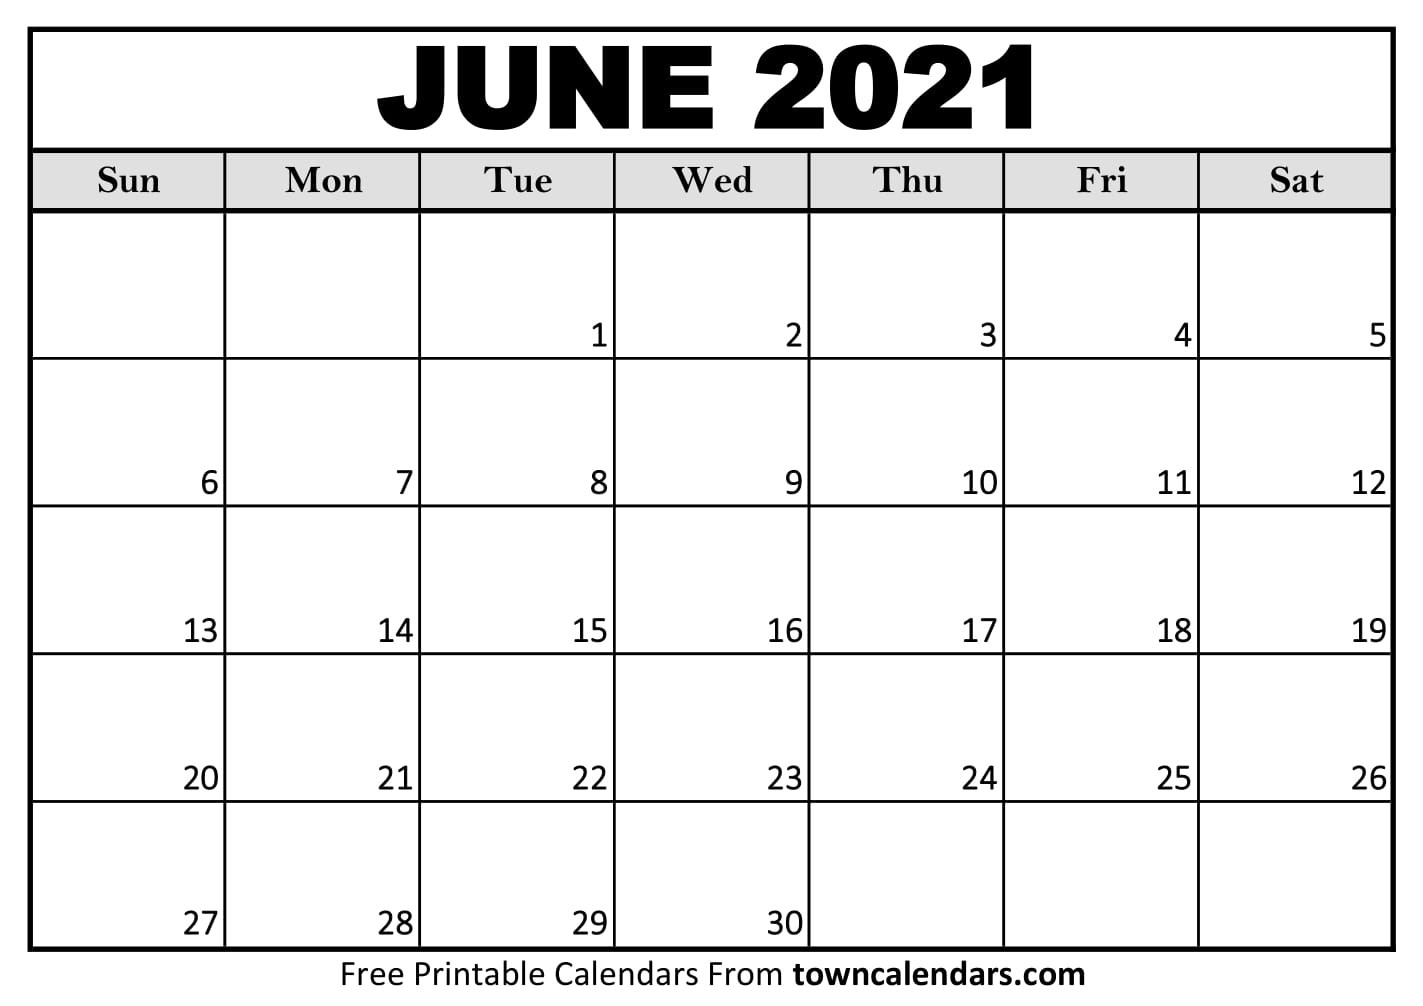 Printable June 2021 Calendar - Towncalendars-Printable Calendar June -October 2021